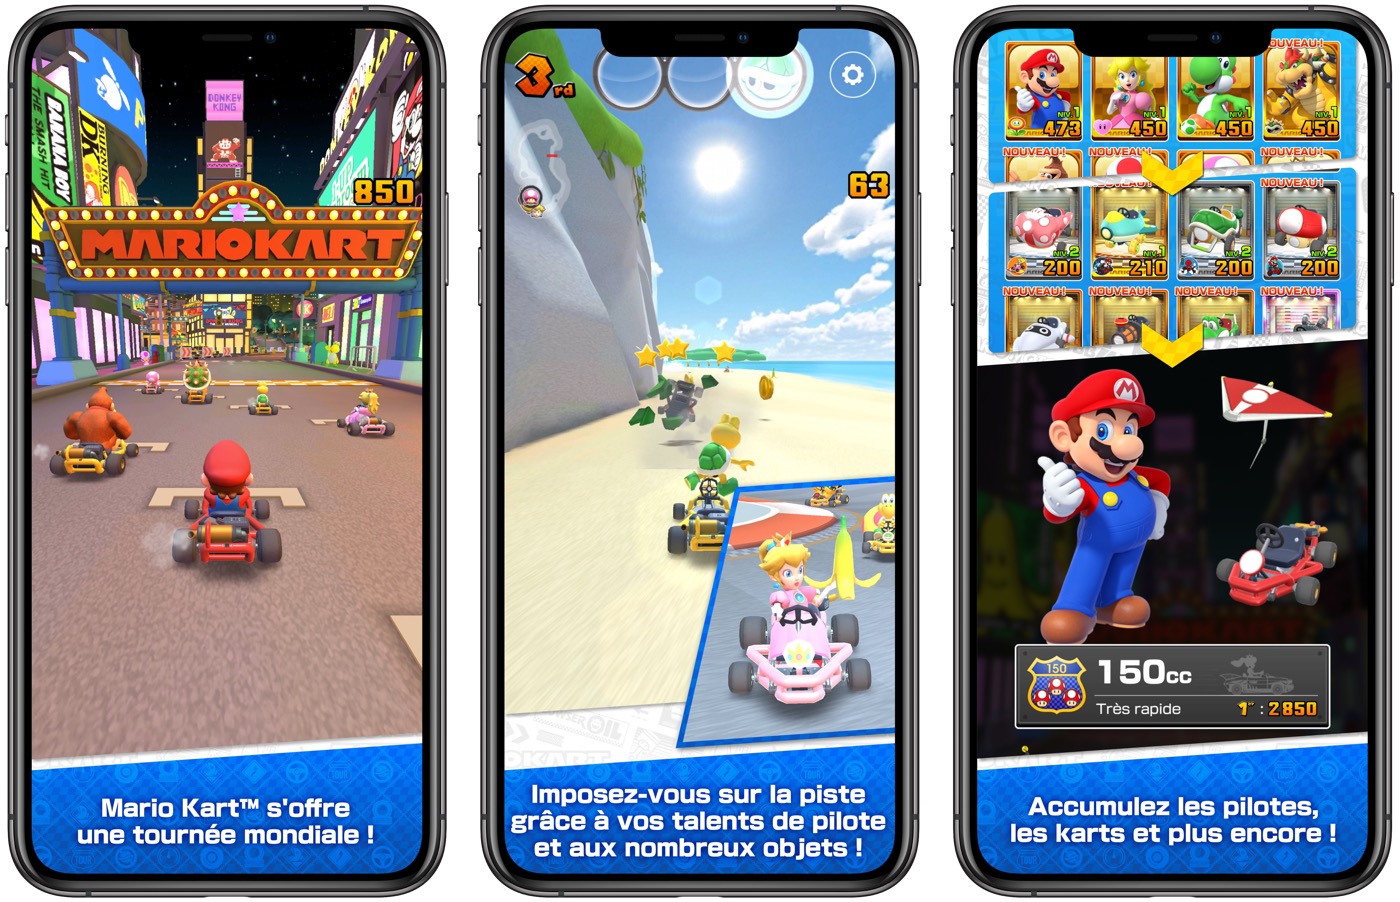 Mario Kart Tour disponible sur iOS et Android le 25 septembre